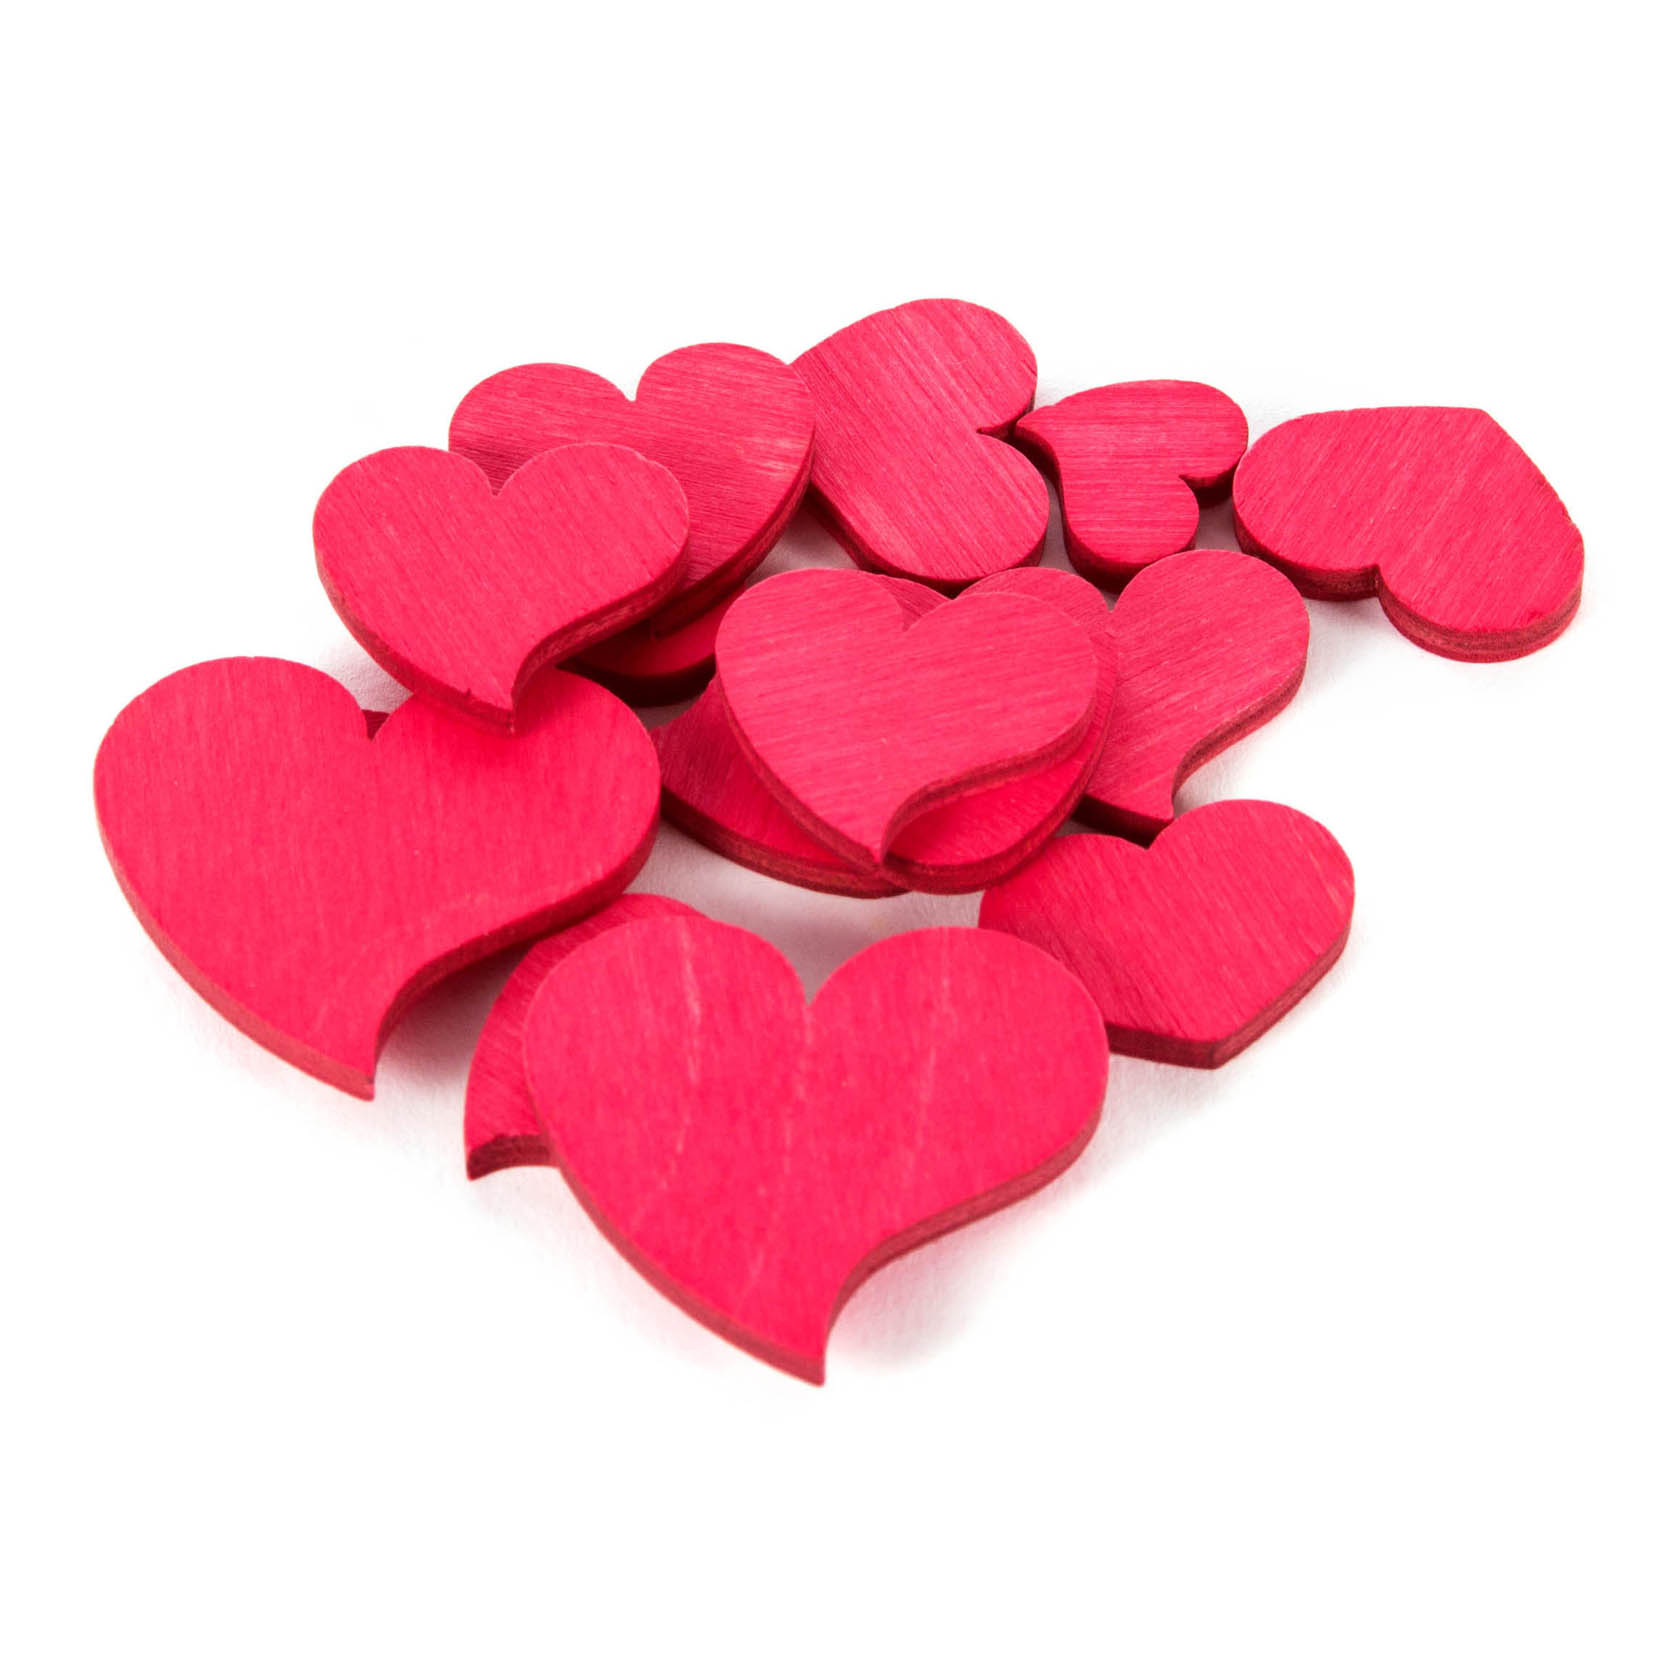 Streudeko Herzen rot 1cm, 2cm und 3cm groß im Dregeno Online Shop günstig kaufen